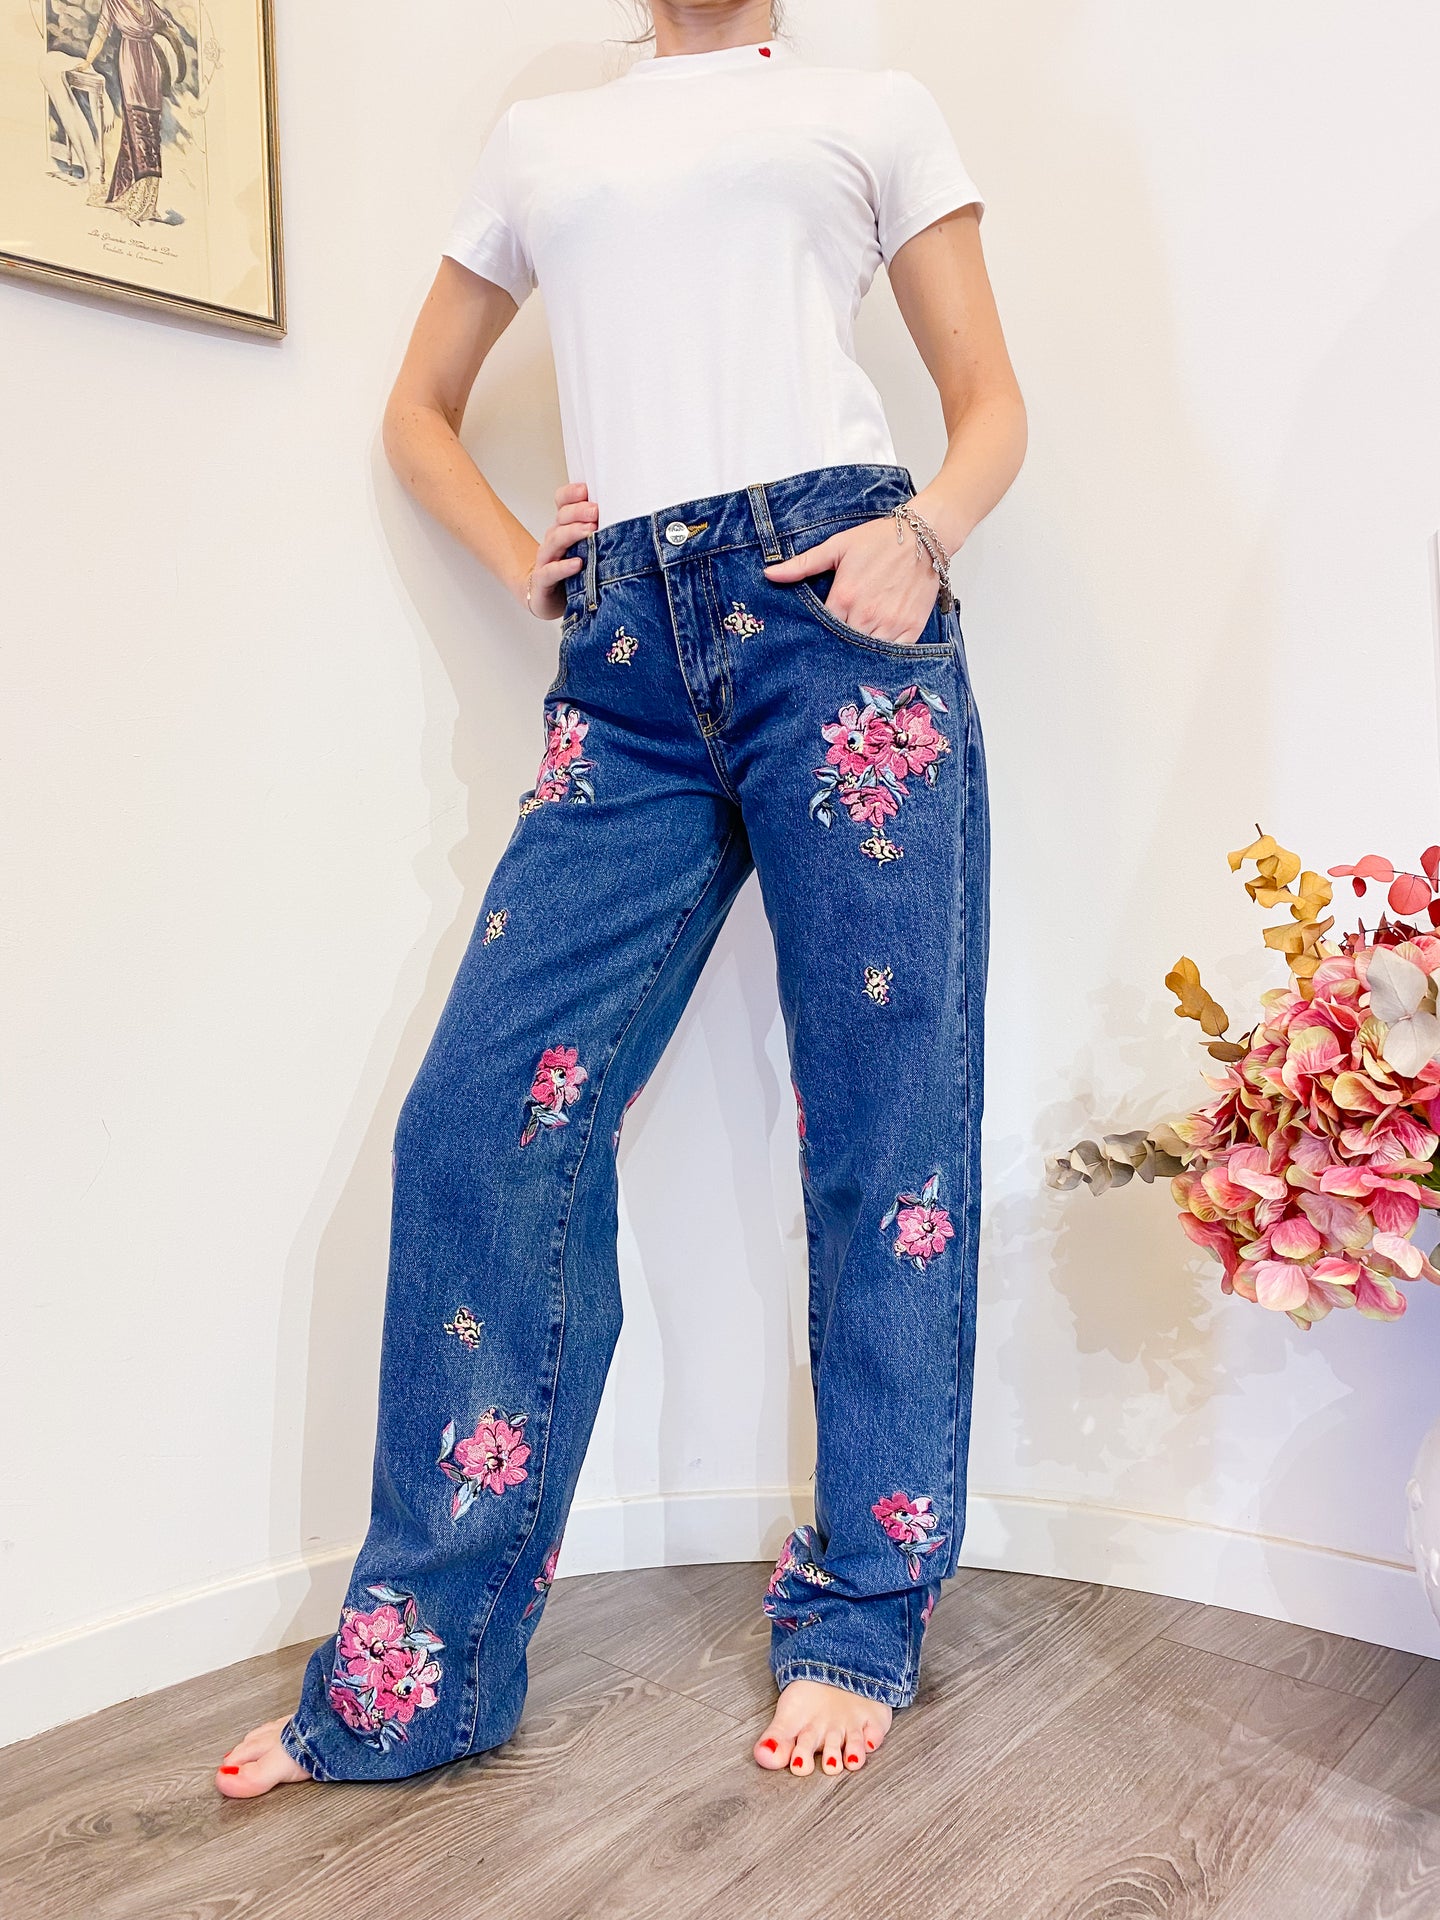 Floral jeans